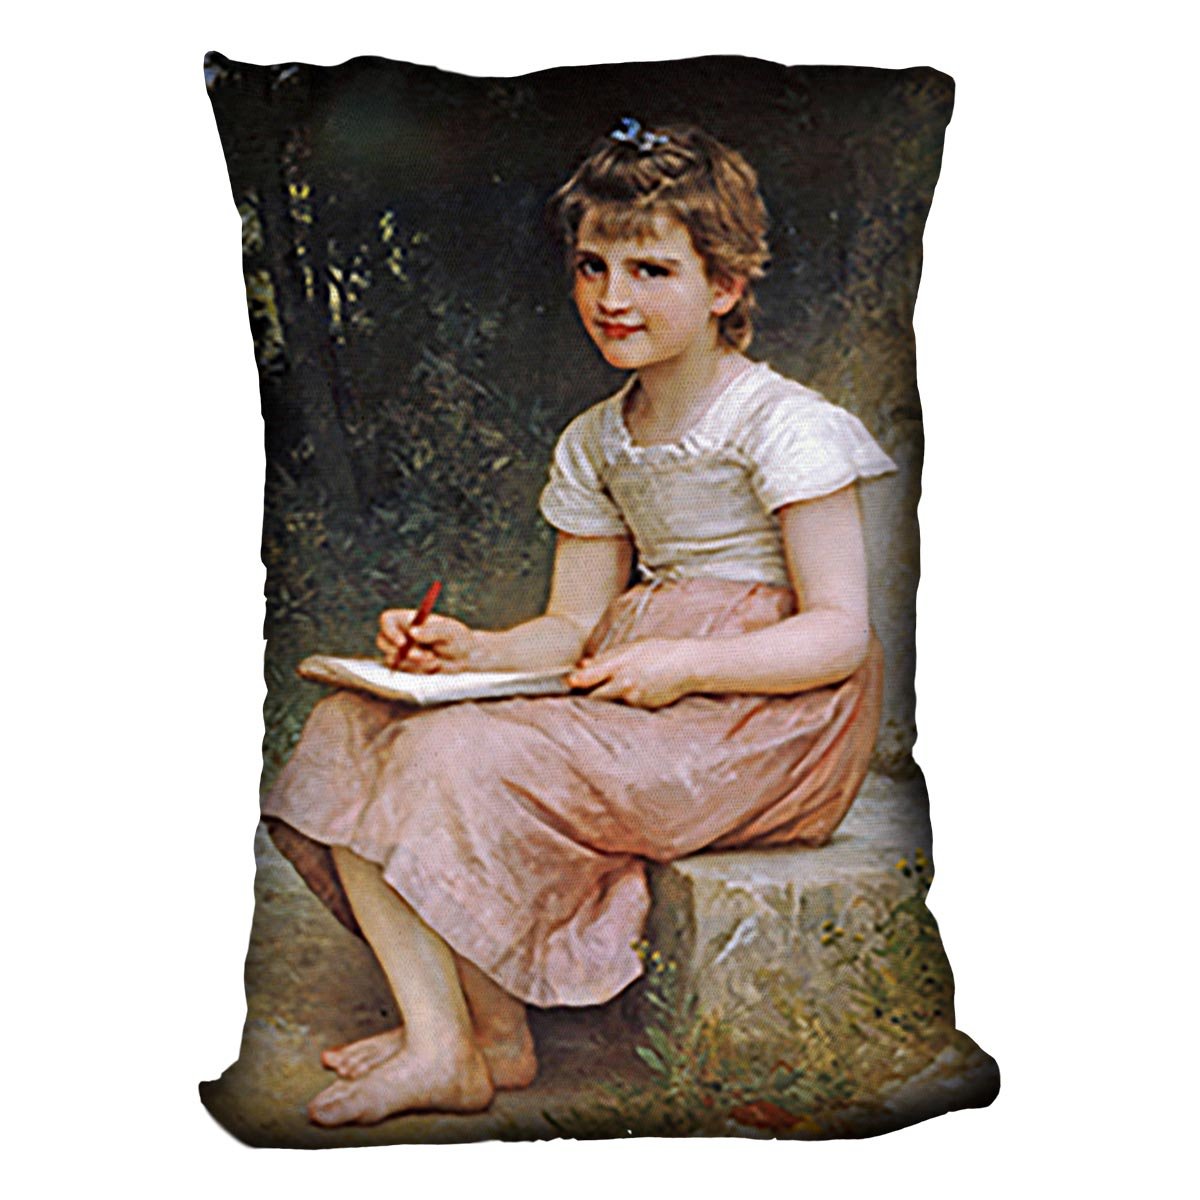 A Calling 1896 By Bouguereau Throw Pillow